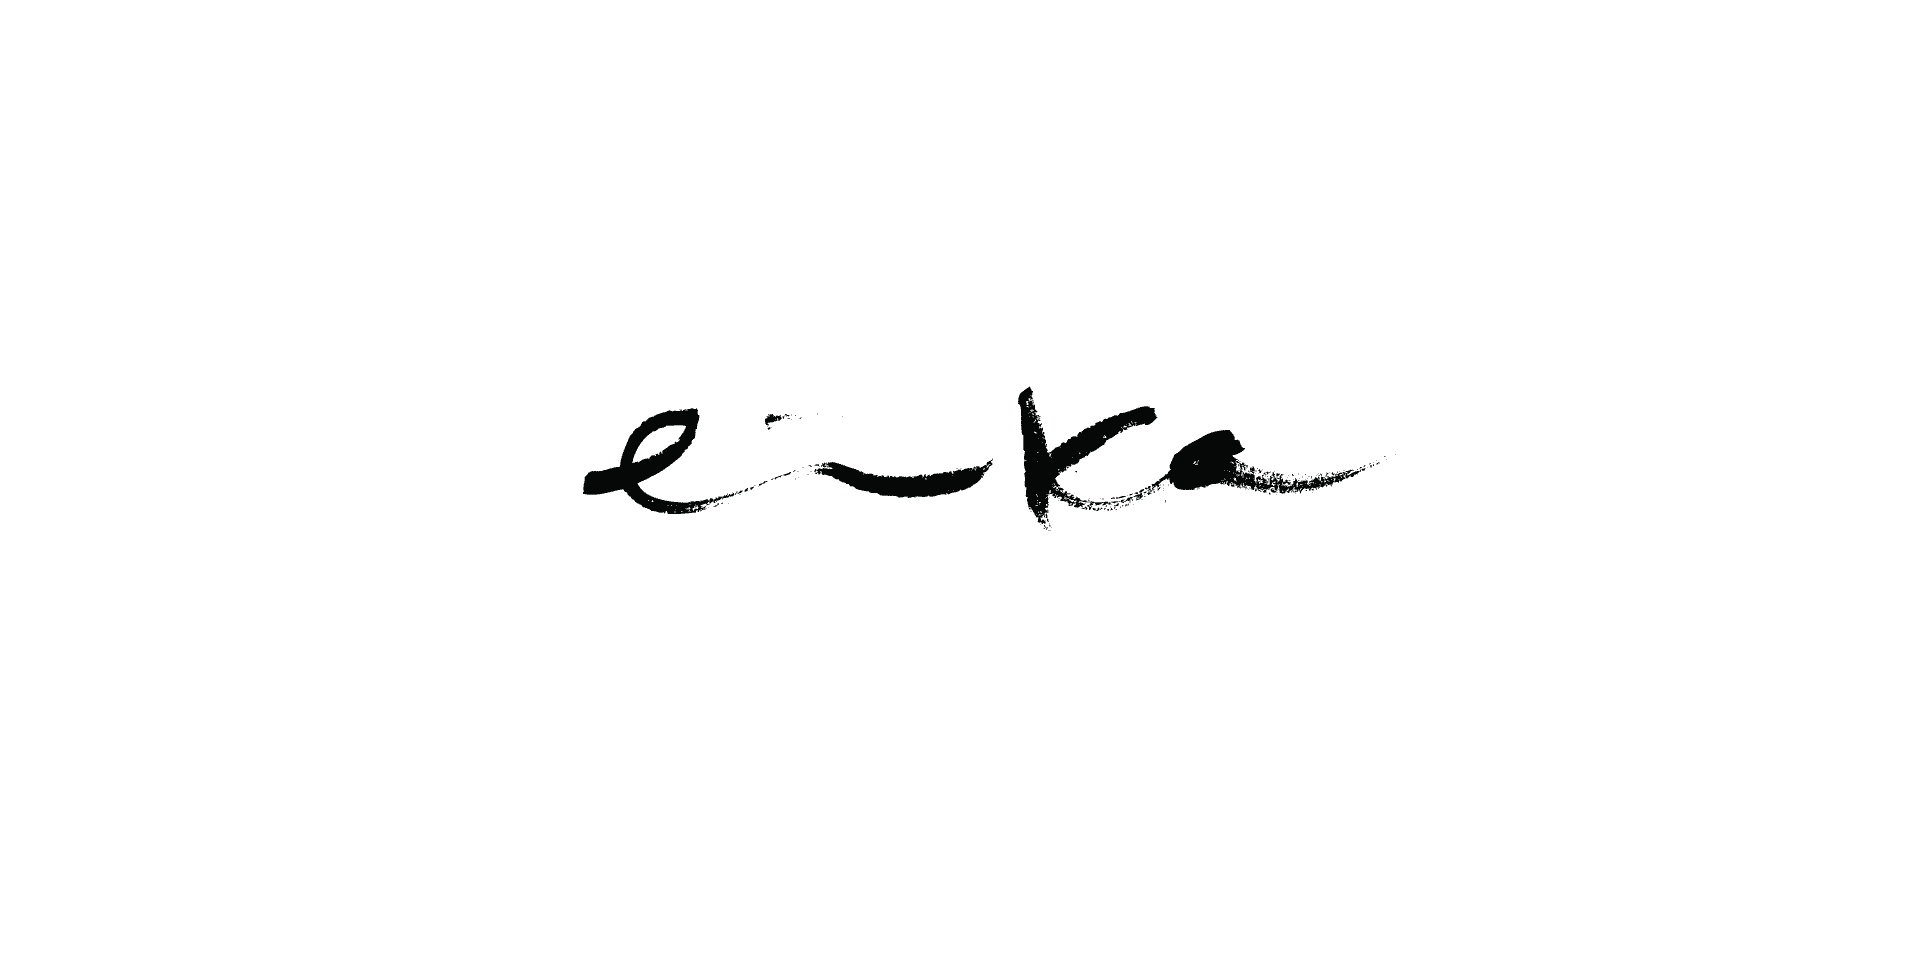 Erika logo